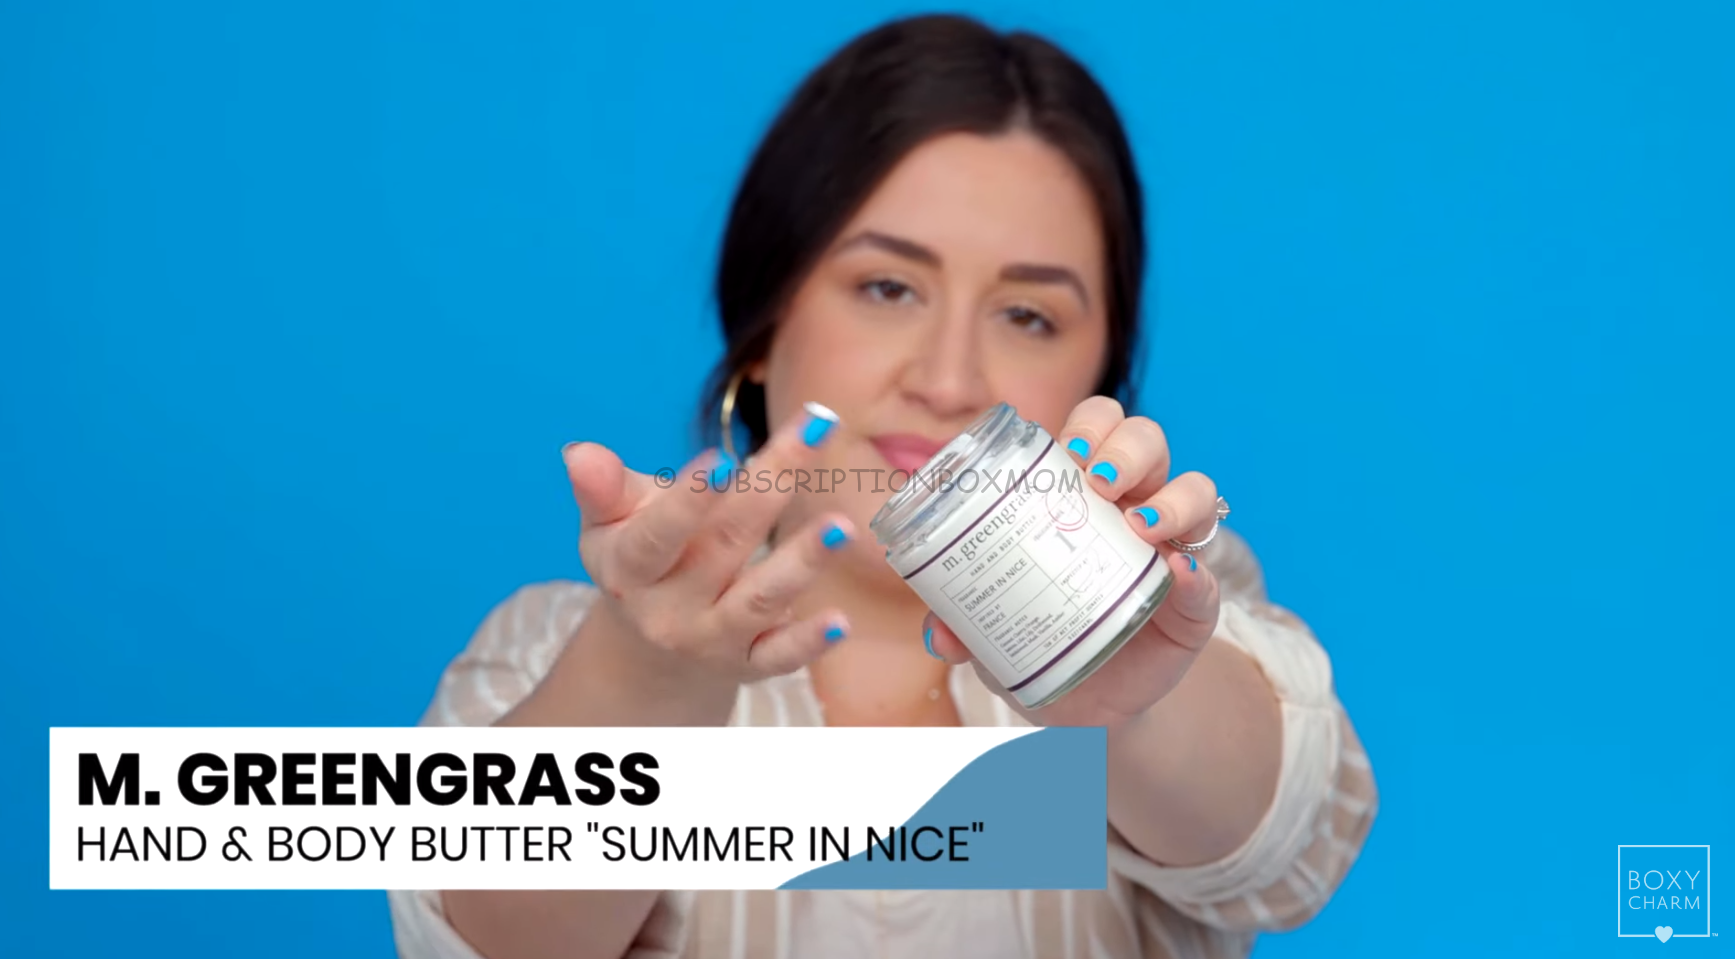 M. Greengrass Hand & Body Butter "Summer in Nice"